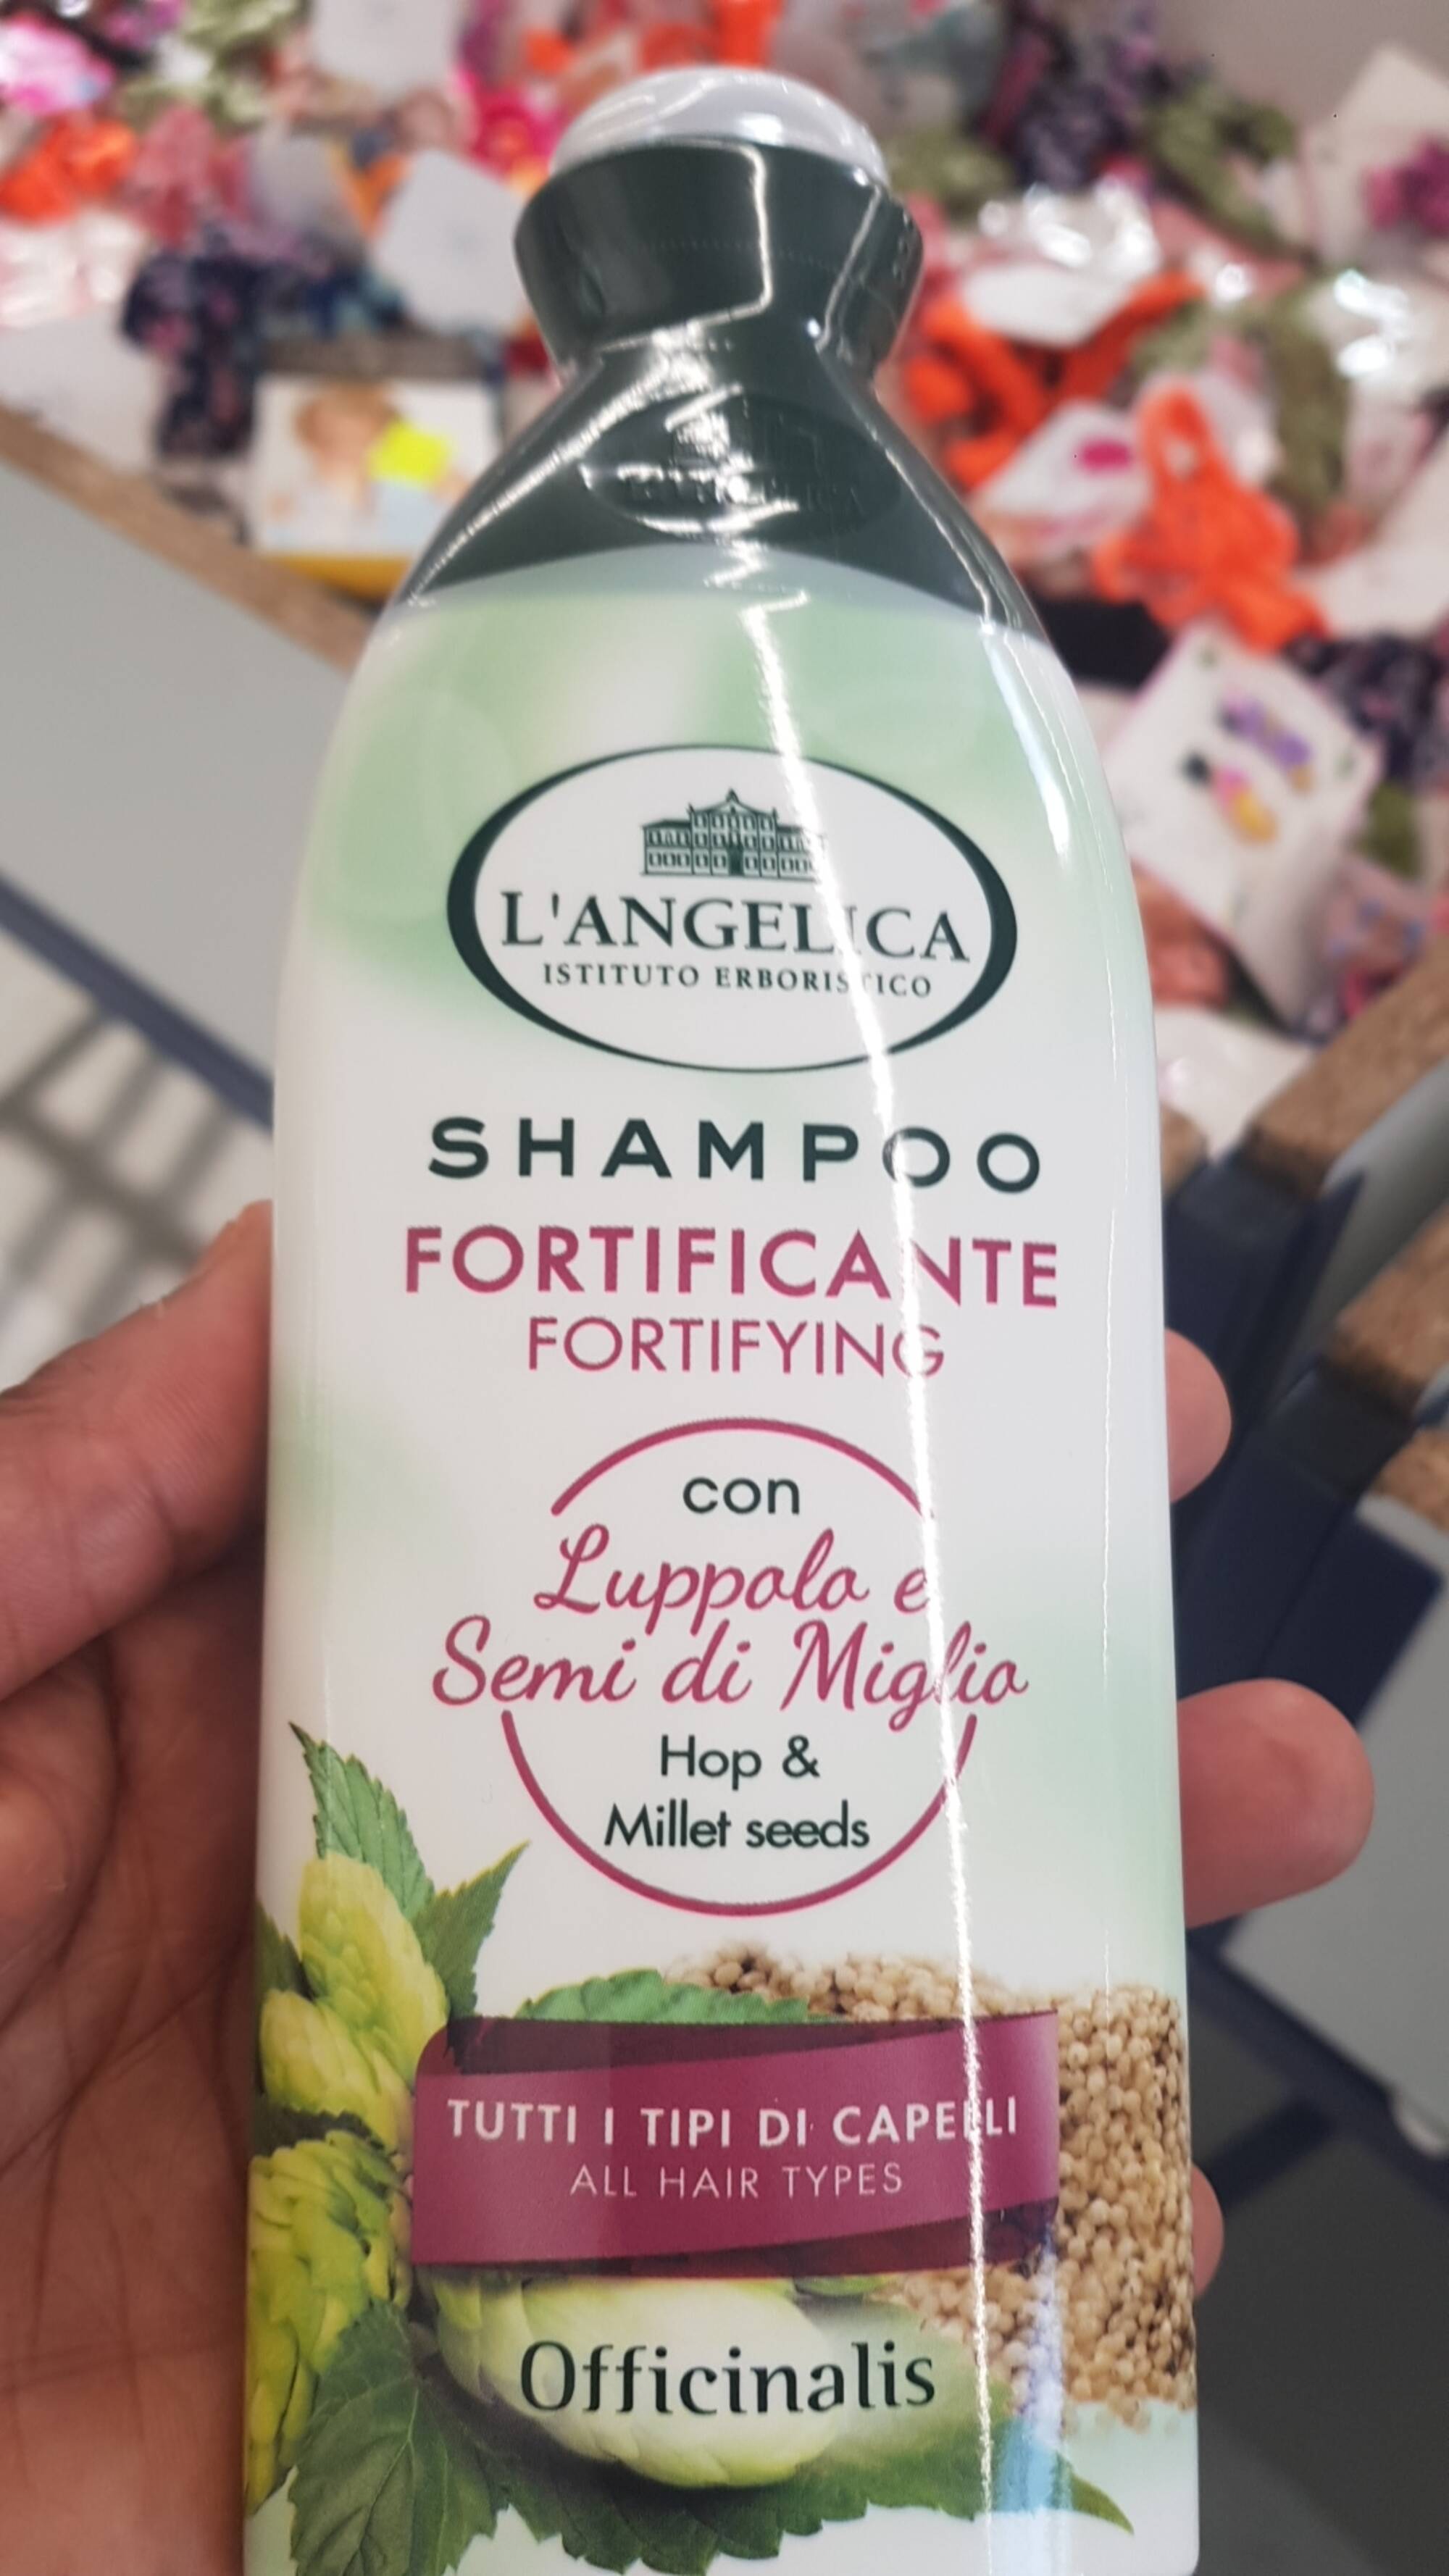 L'ANGELICA - Shampoo fortificante 